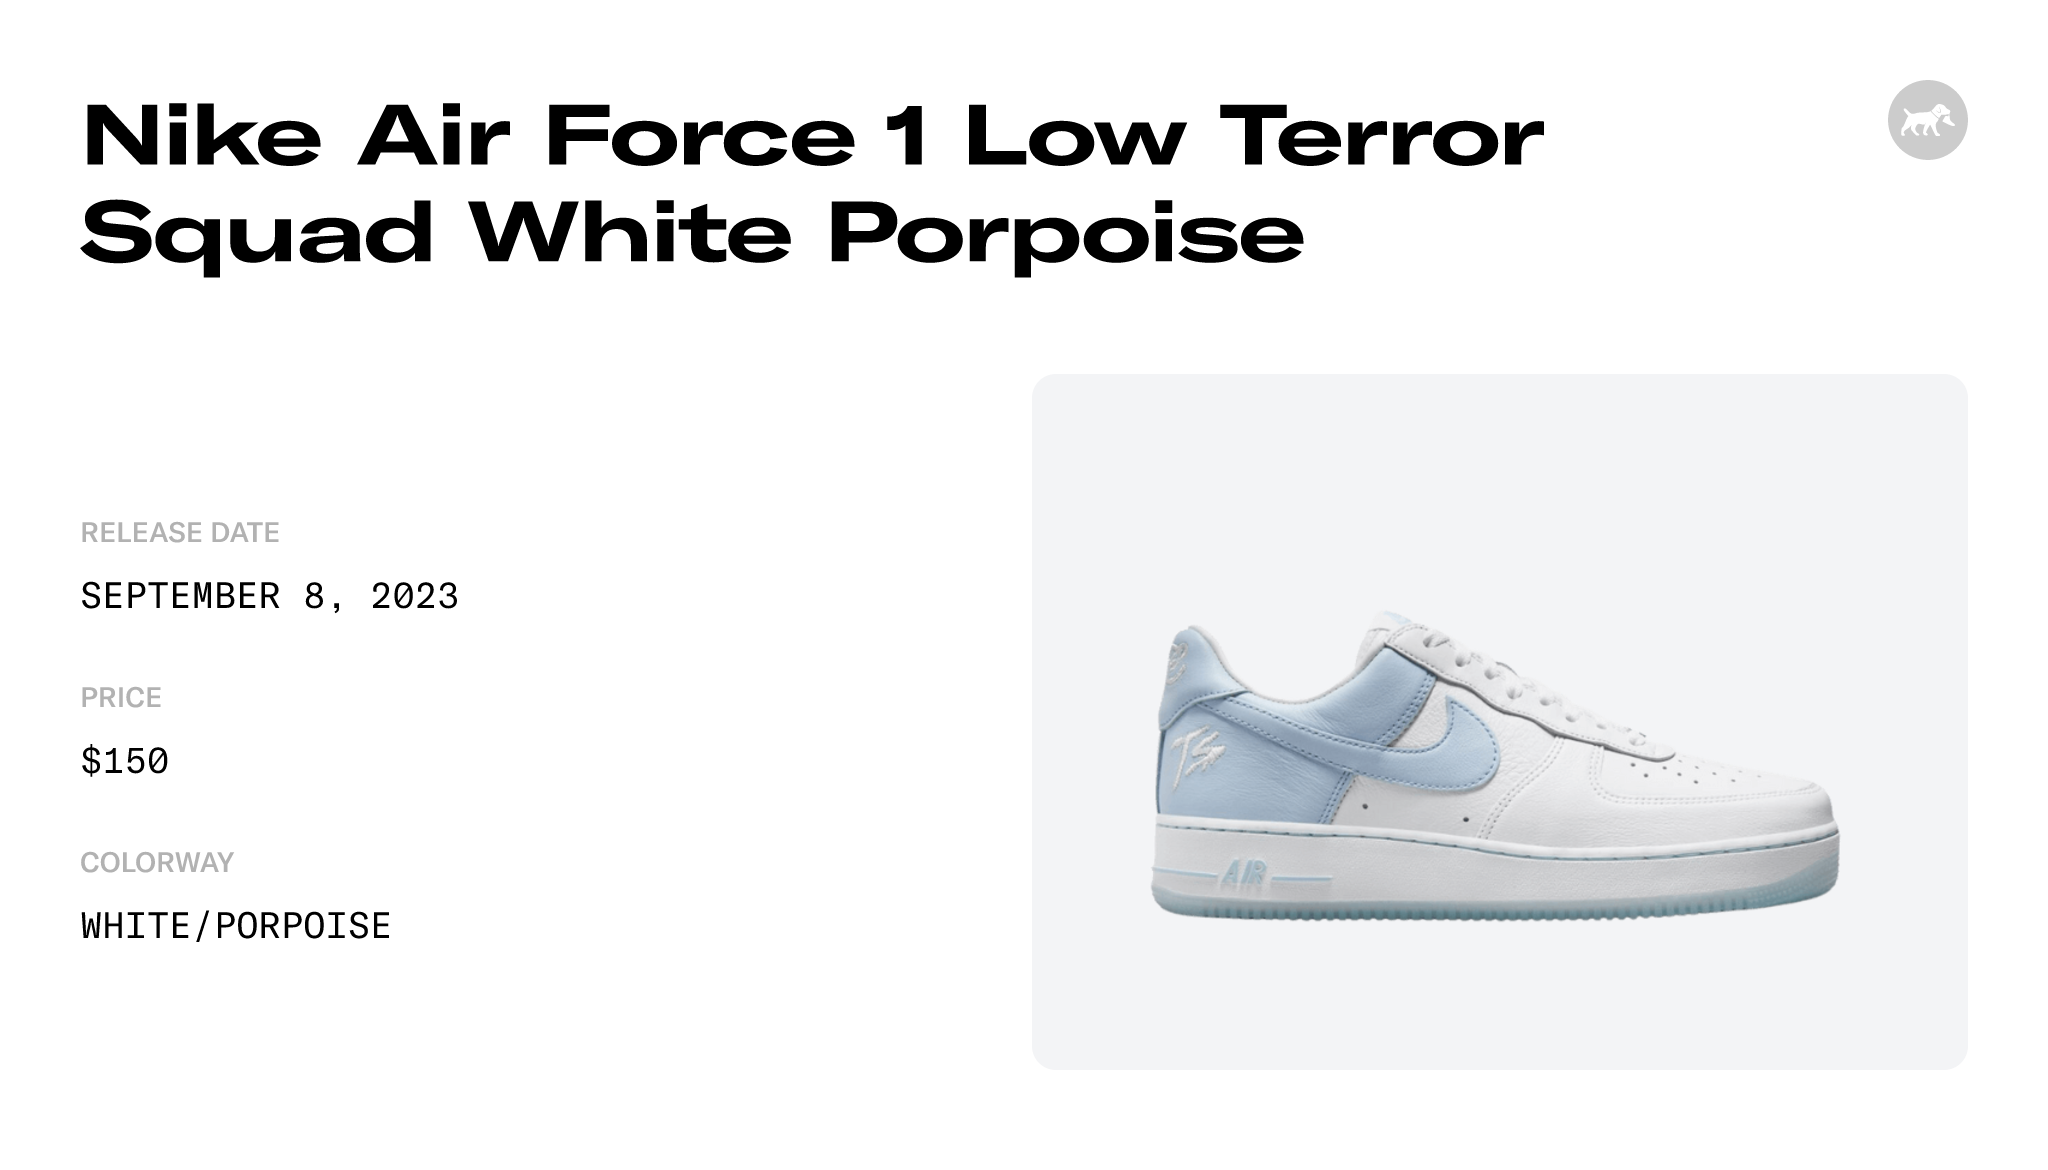 Terror Squad x Nike Air Force 1 Low White Porpoise FJ5755-100